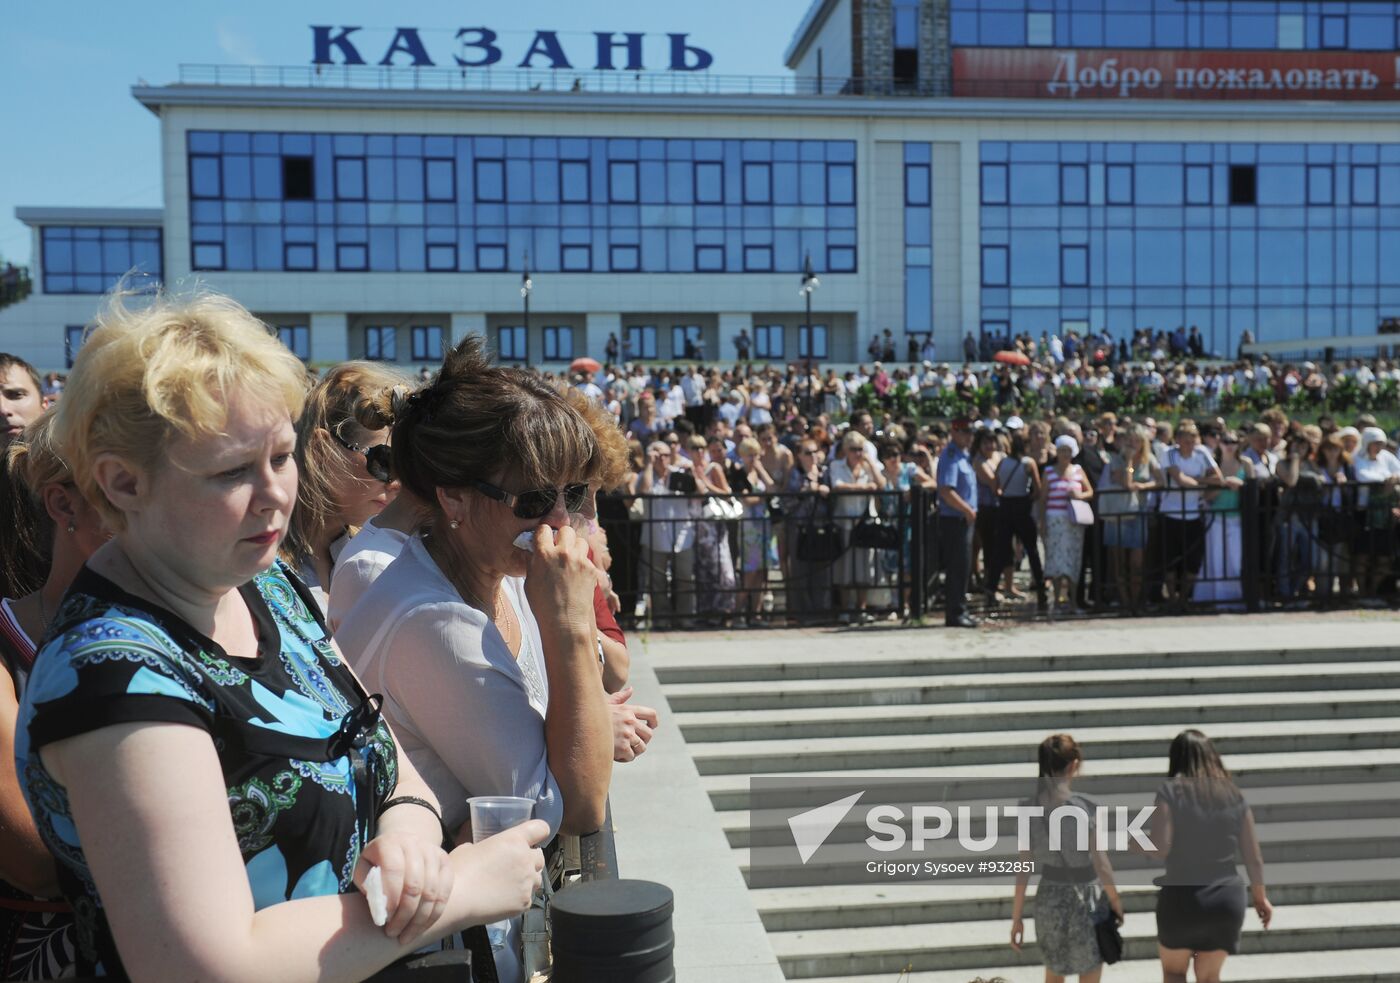 People mourn Bulgaria cruise boat victims in Kazan